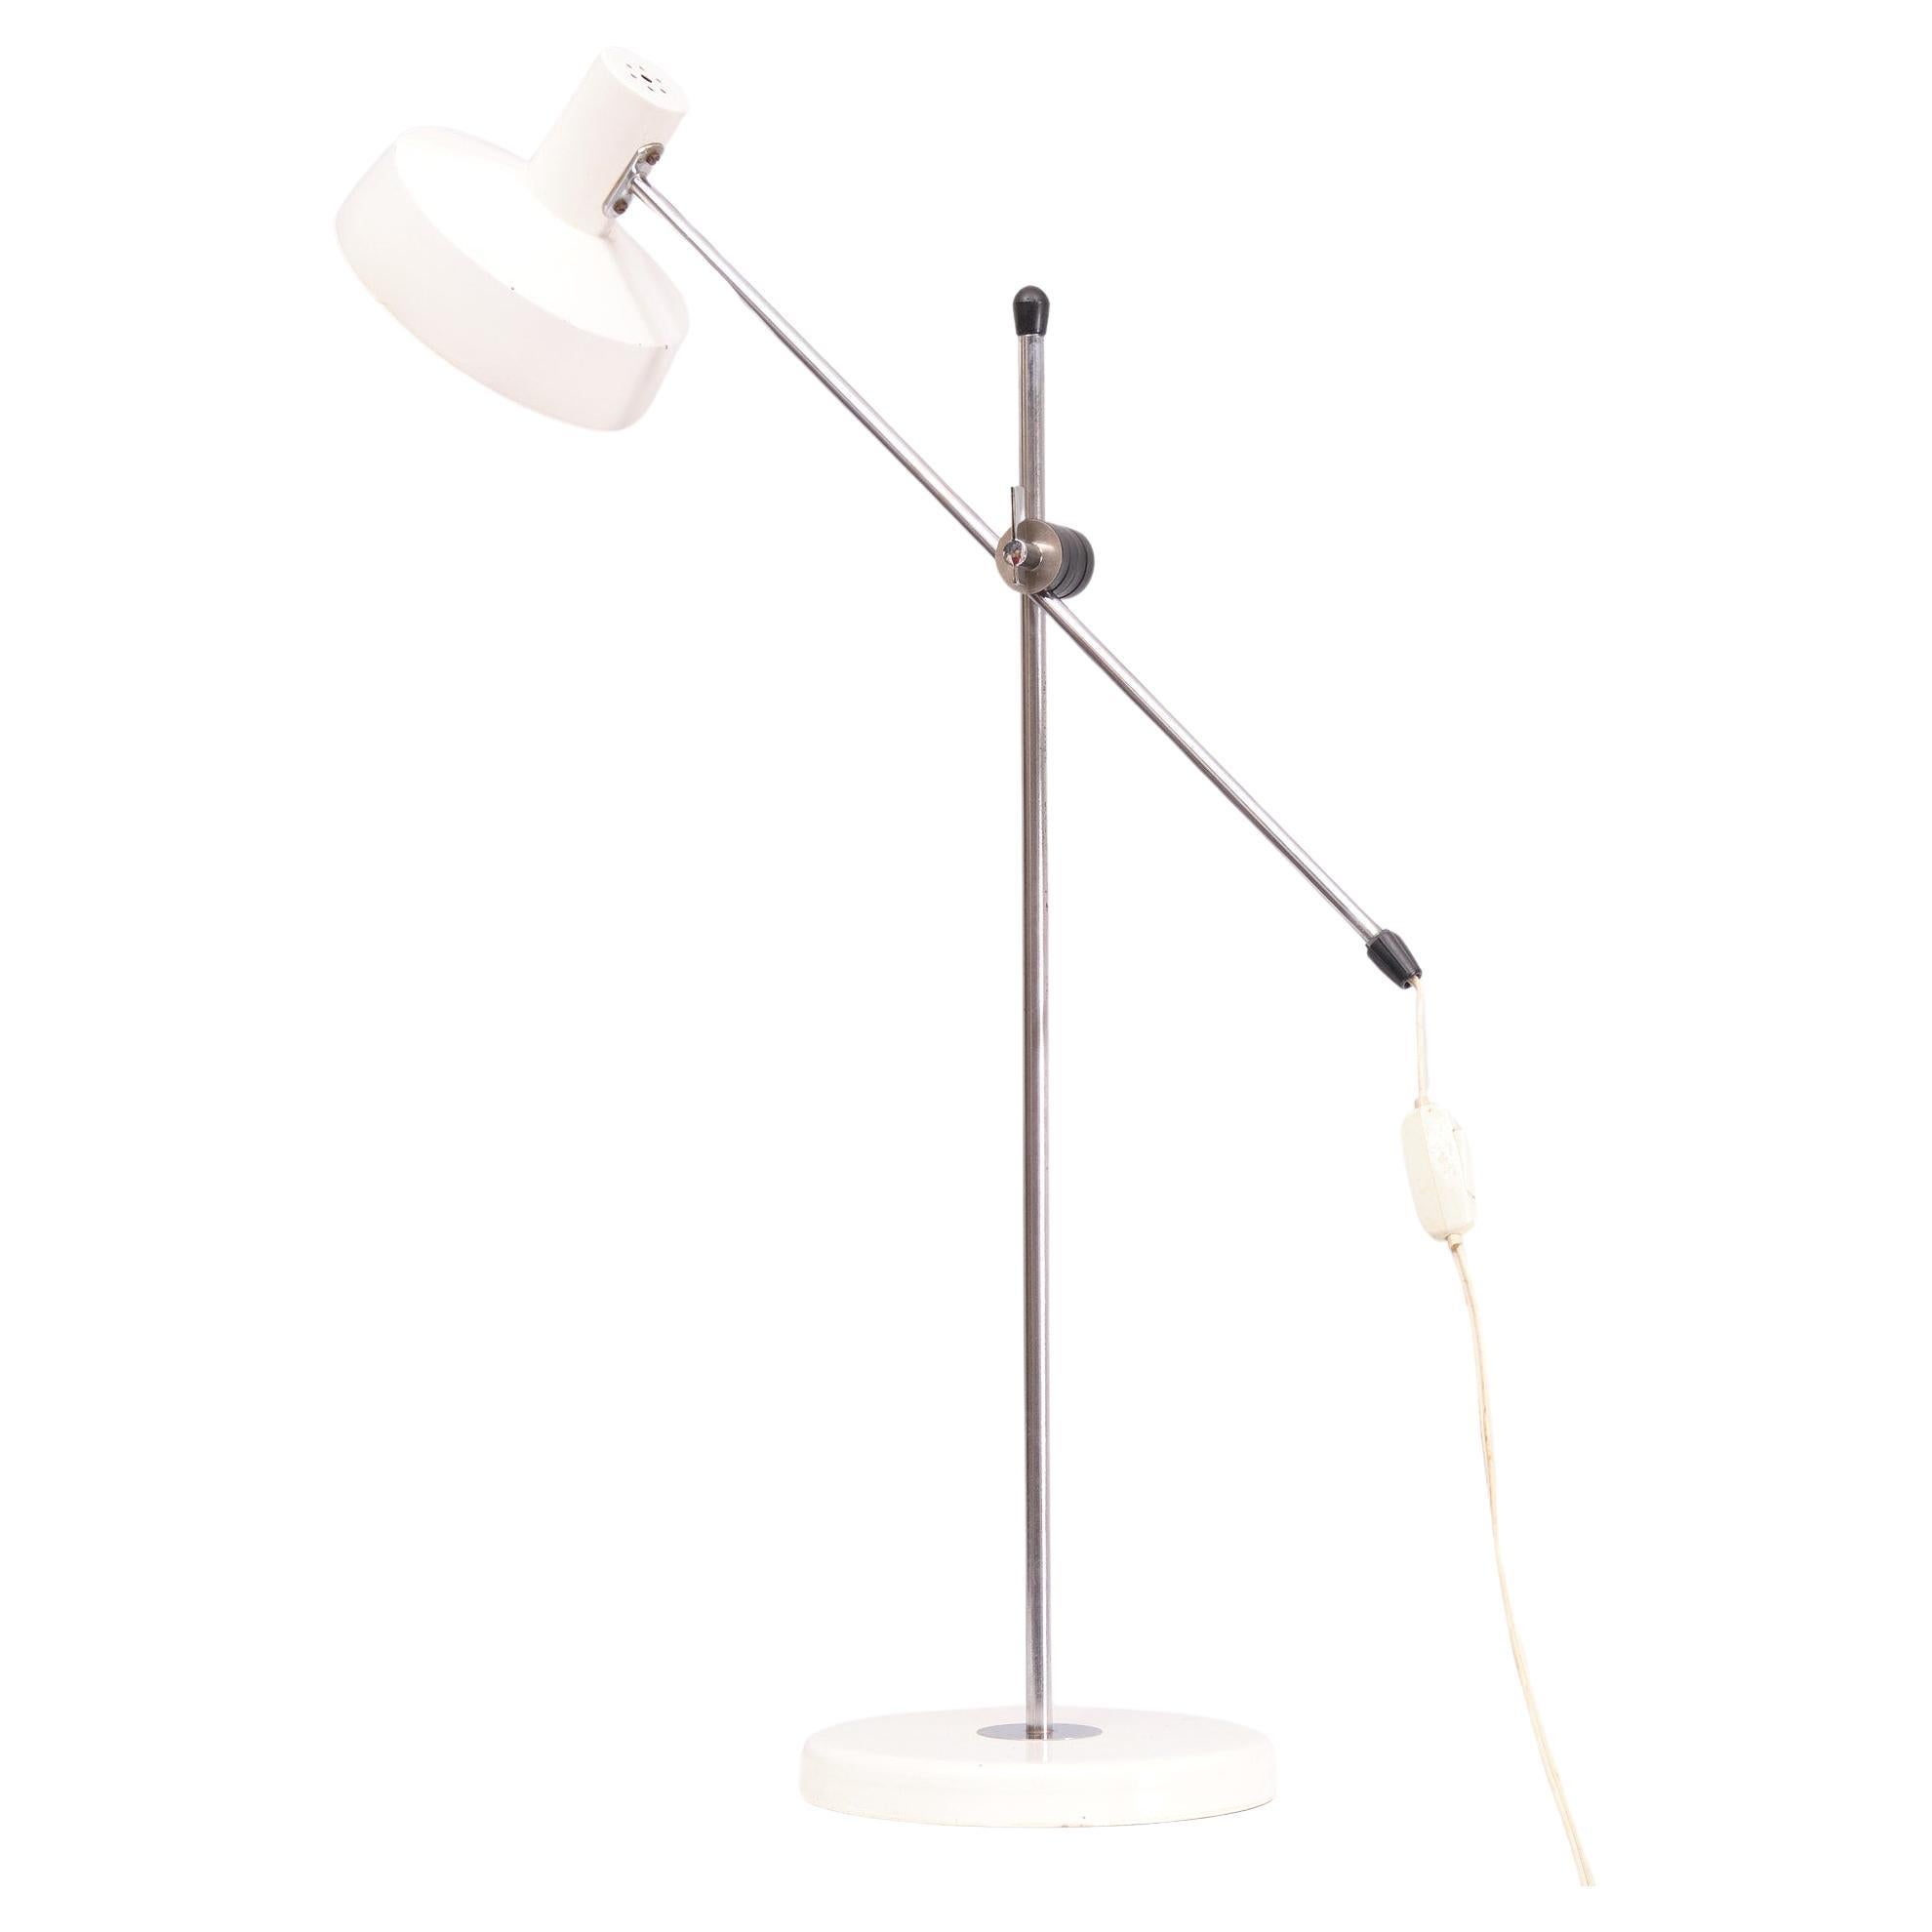 Très beau petit lampadaire ou grande lampe de bureau.  Couleur blanche 
Réglable en hauteur et orientable, elle nécessite une ampoule E27 de grande taille.  